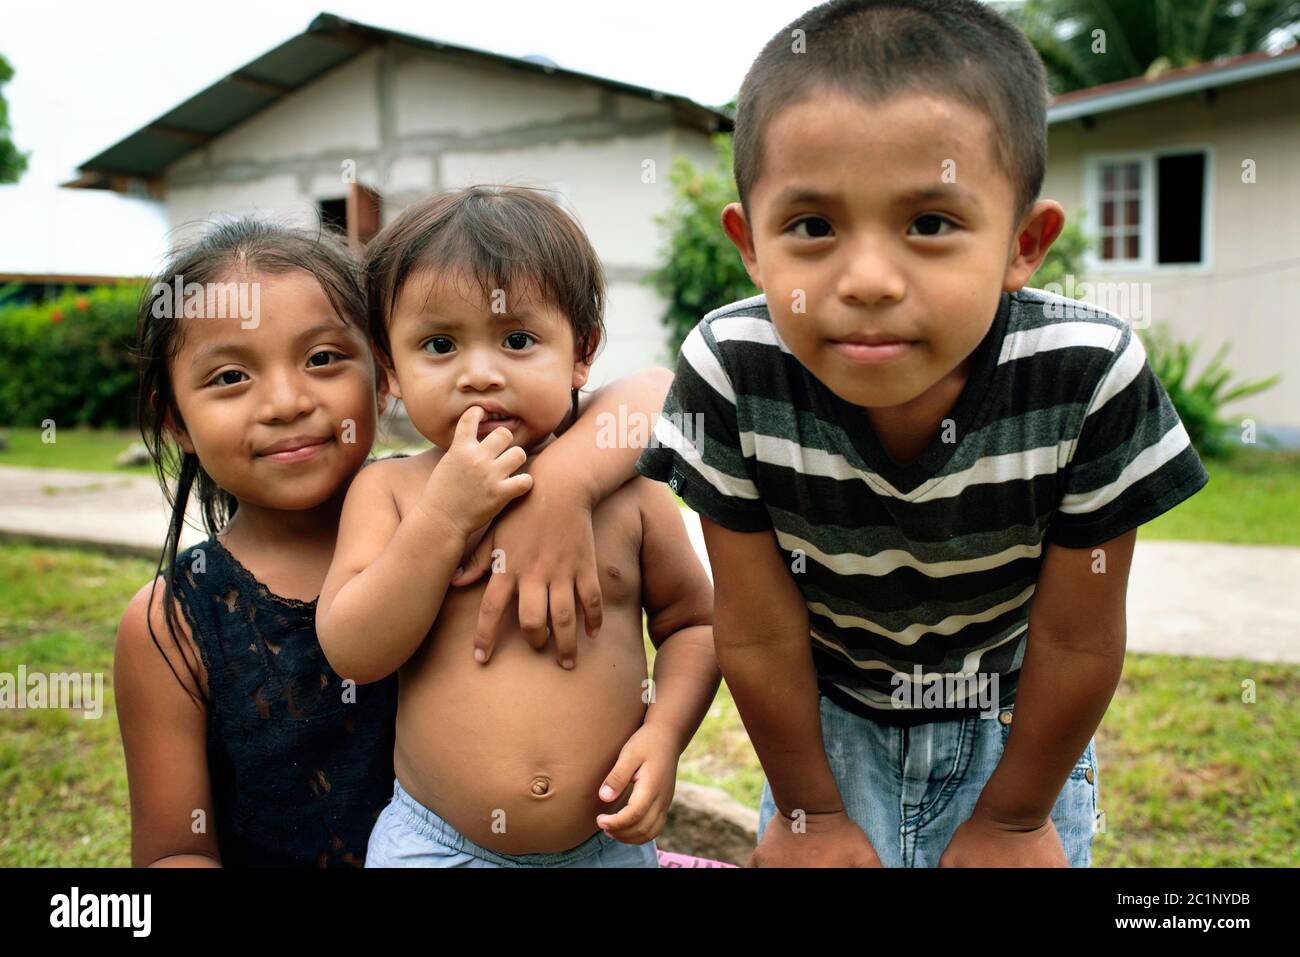 Portrait en gros plan d'enfants panaméens natifs regardant l'appareil photo. Caraïbes vivant sur Isla Bastimentos, province de Bocas del Toro, Panama. Octobre 2018 Banque D'Images